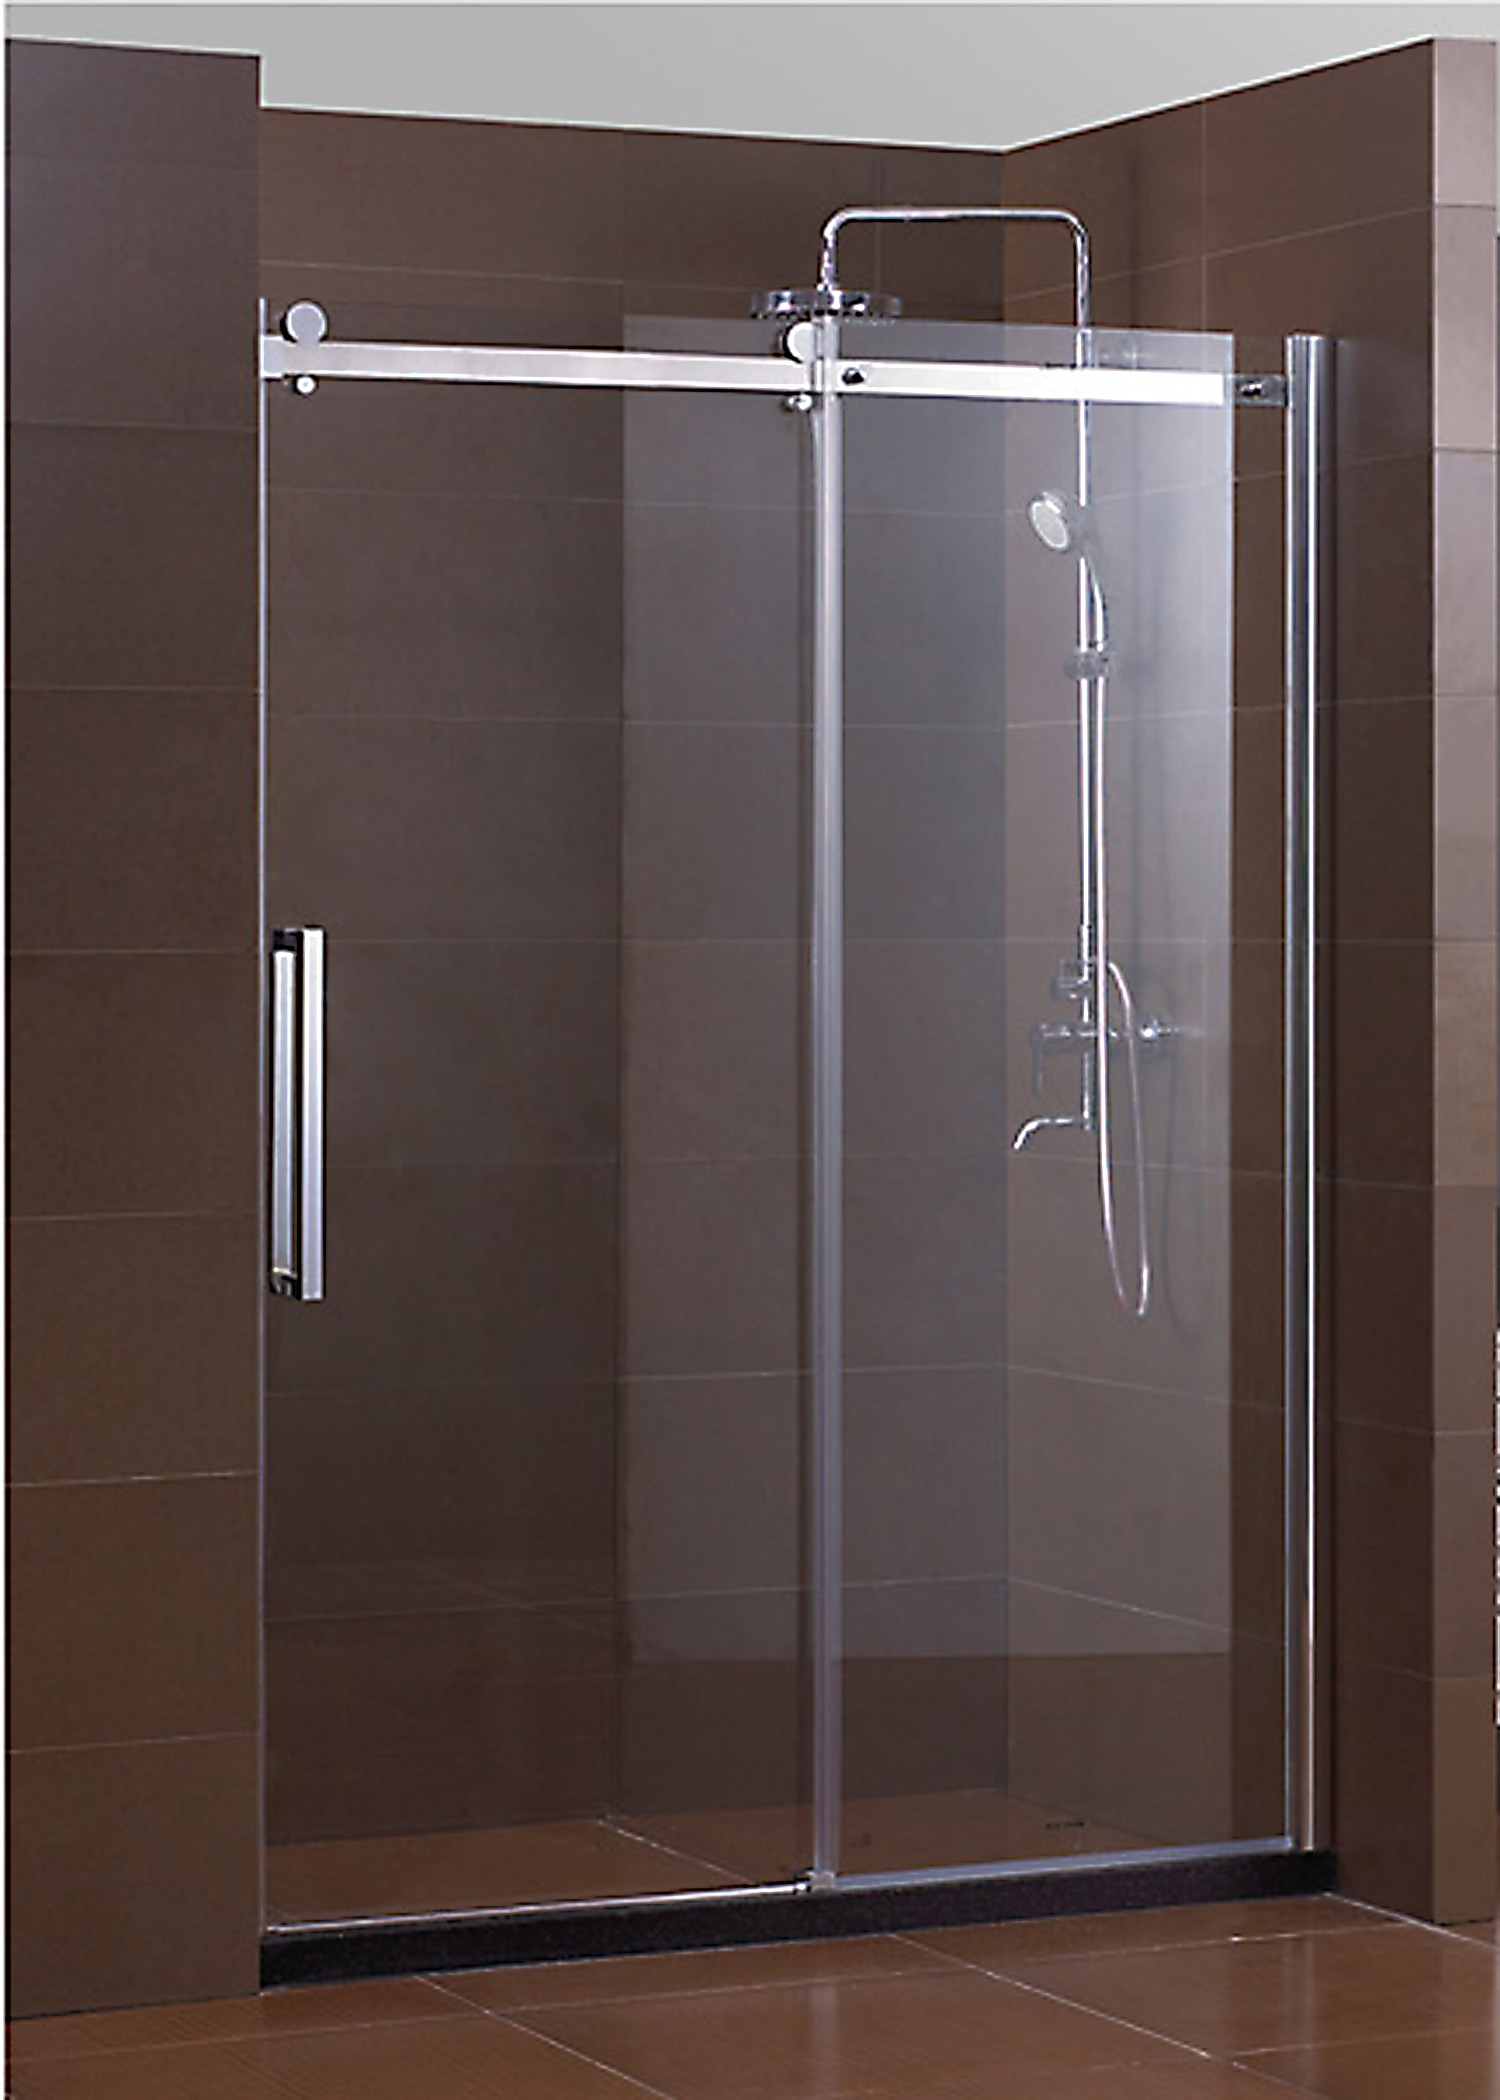 Sliding Shower Door Towel Bar Bracketstylish frameless sliding shower doors home design john